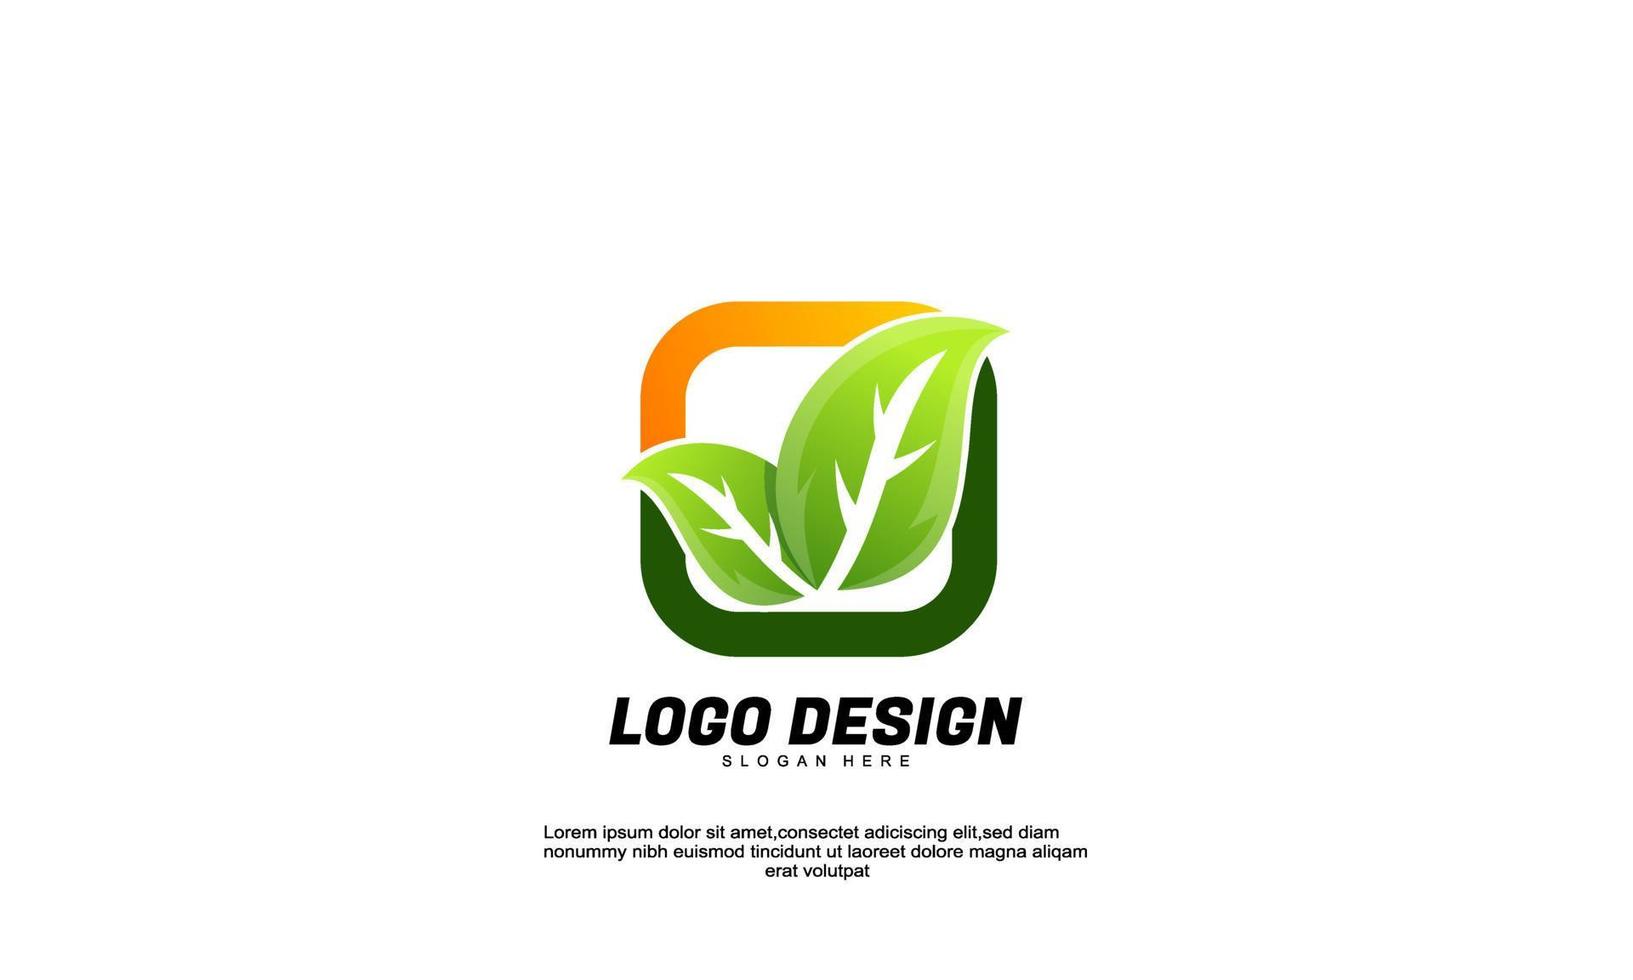 idea de inspiración creativa abstracta de stock logotipo de hoja y rectángulo de marca para vector de diseño de estilo plano de empresa o negocio